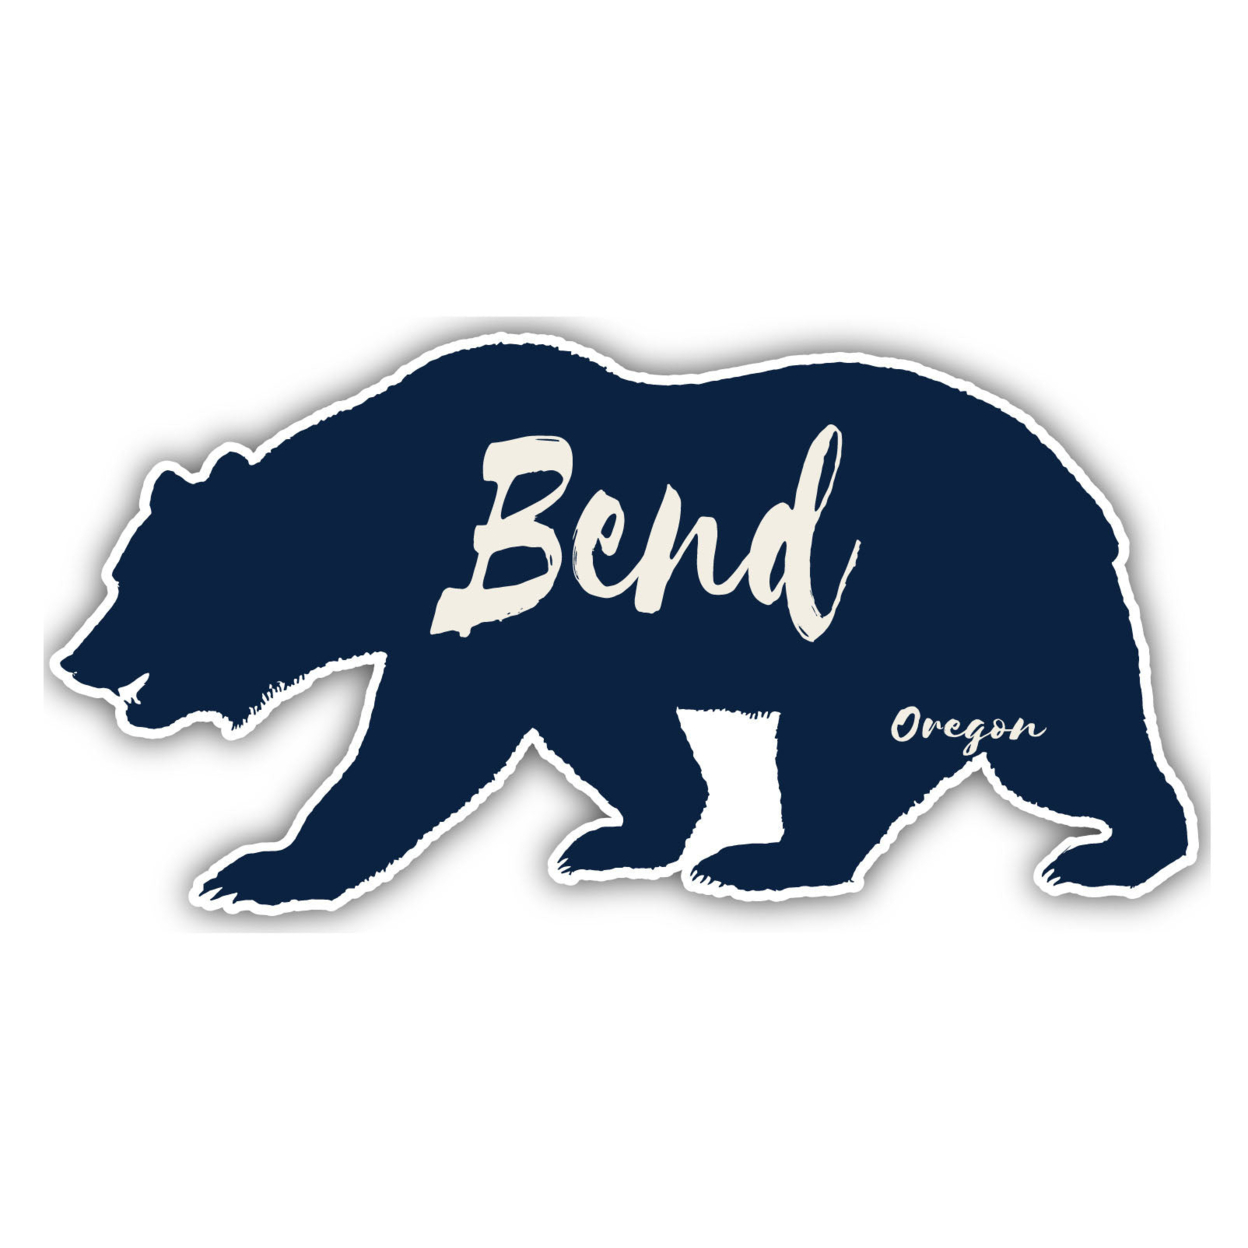 Bend Oregon Souvenir Decorative Stickers (Choose Theme And Size) - Single Unit, 6-Inch, Tent